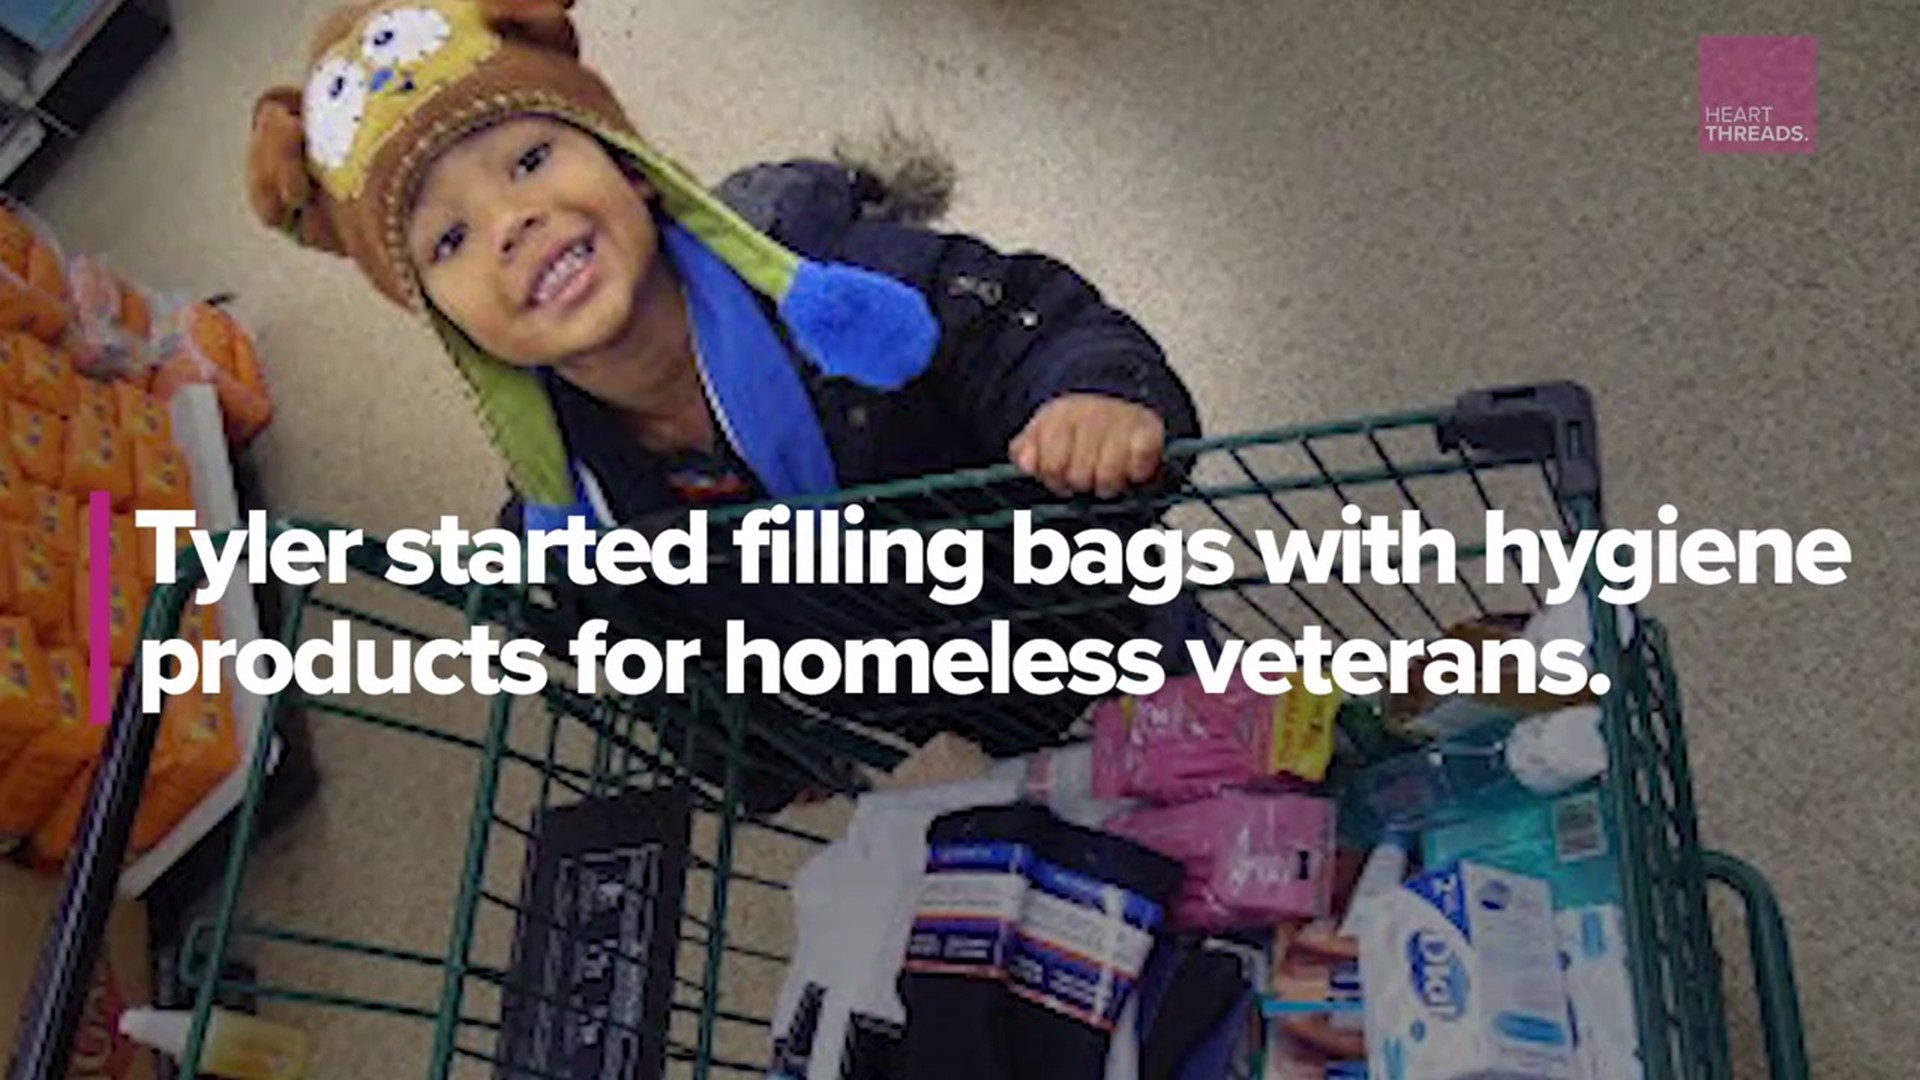 Kid makes packages for homeless veterans